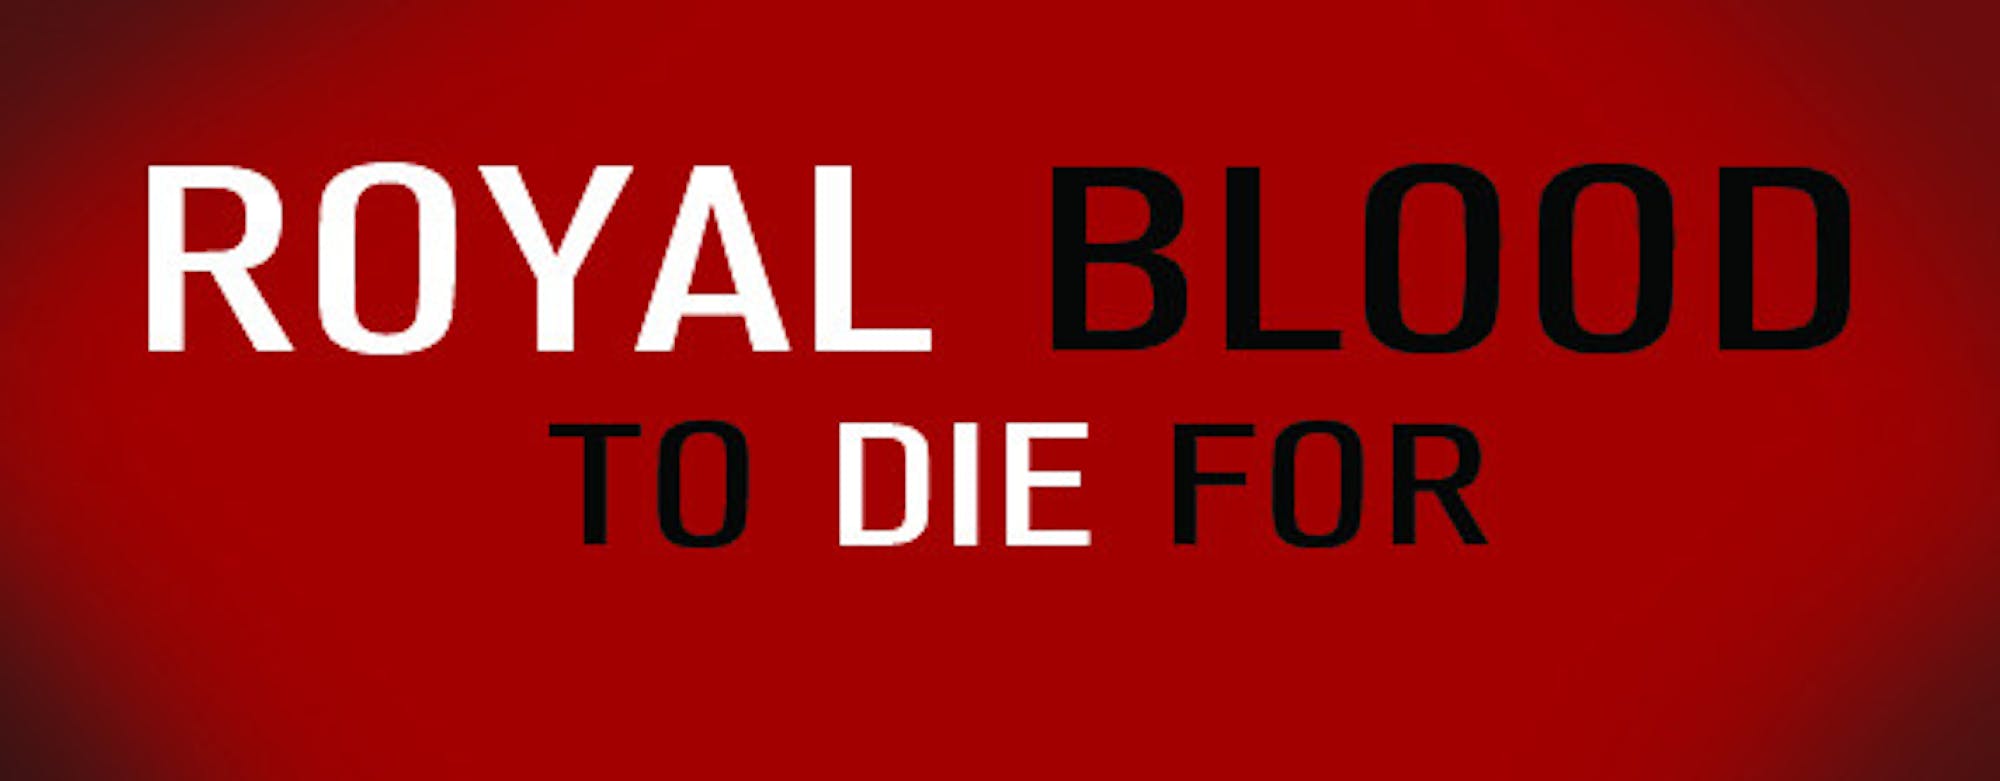 Royal Blood Teaser